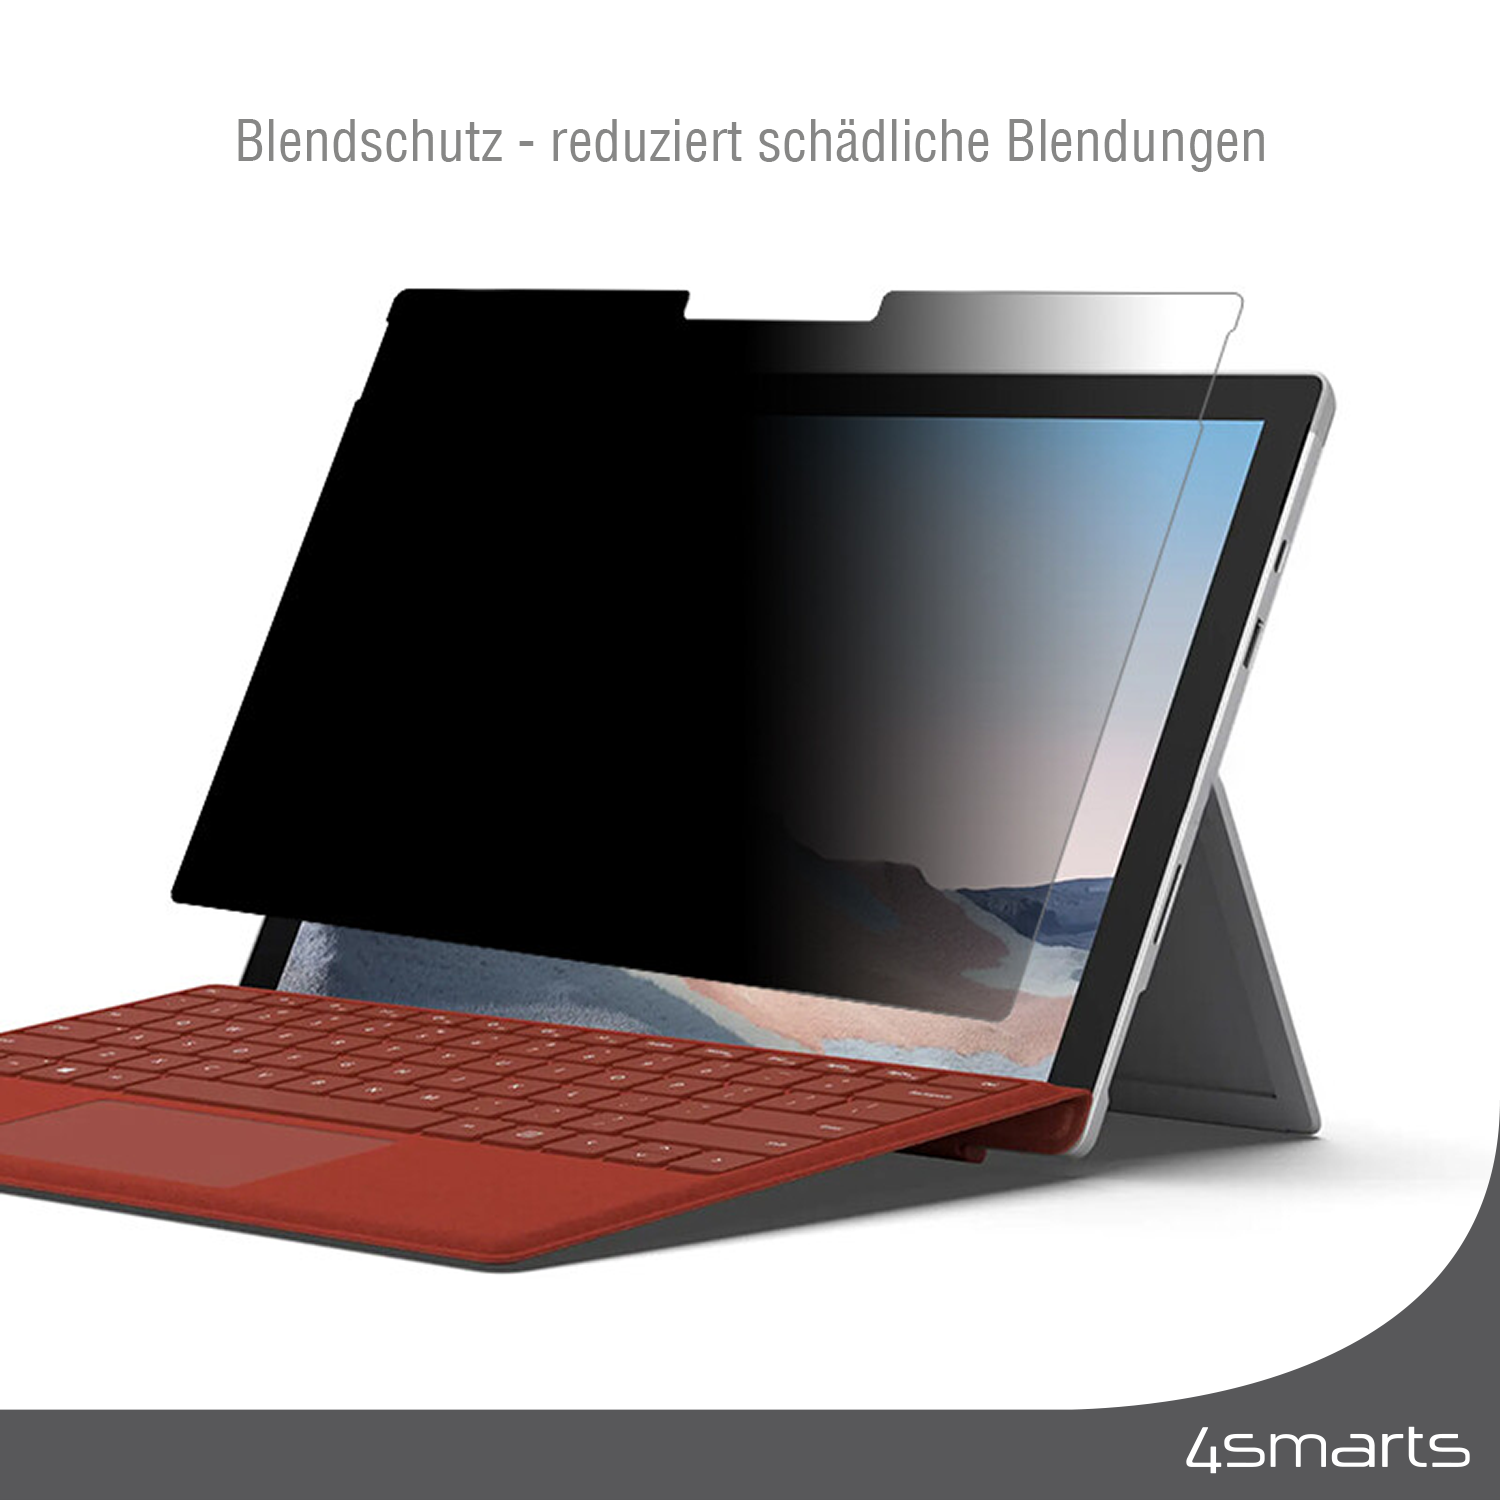 4SMARTS Smartprotect Magnetischer Privacy Filter Surface Microsoft 5 Laptop Zoll) 13,5 Displayschutzfolie(für